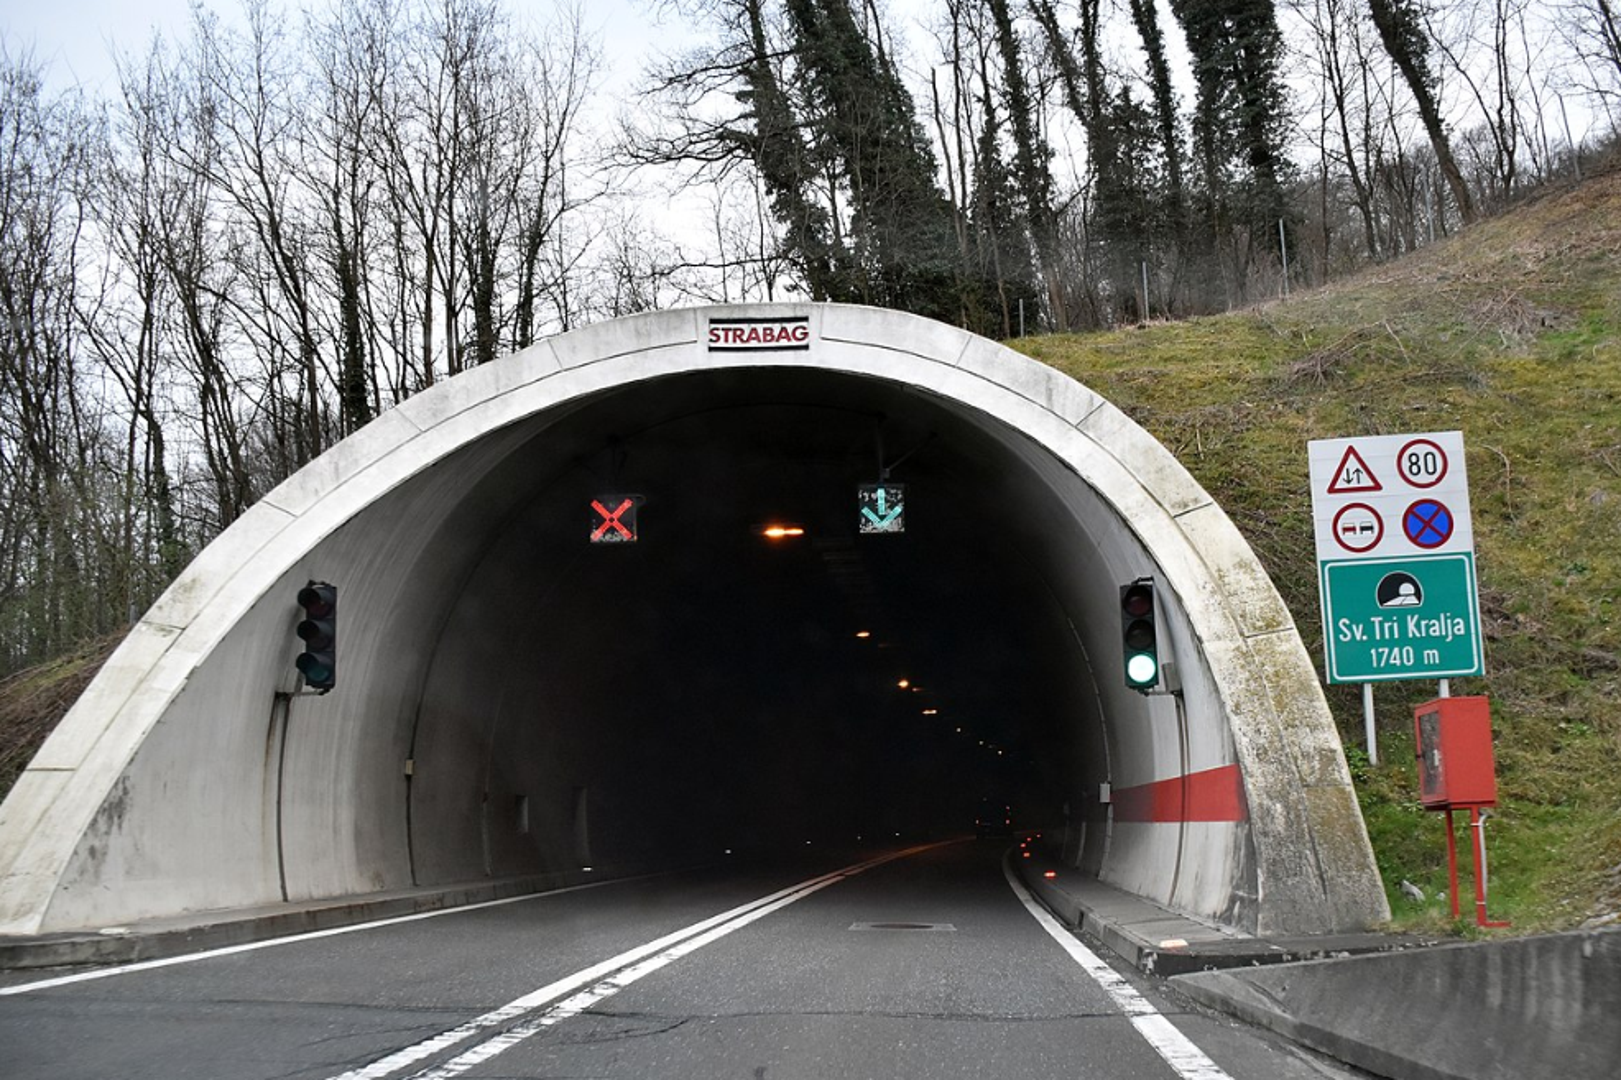 8. Tunel Sveta tri kralja, 1.740 metara: Tunel Sveta tri kralja ključni je dio autoceste Zagreb-Macelj, koja je sastavni dio ulaska Hrvatske u schengenski prostor i vitalna poveznica europskog prometnog koridora X. Njegova izgradnja osigurava visoku razinu sigurnosti i operativne učinkovitosti.